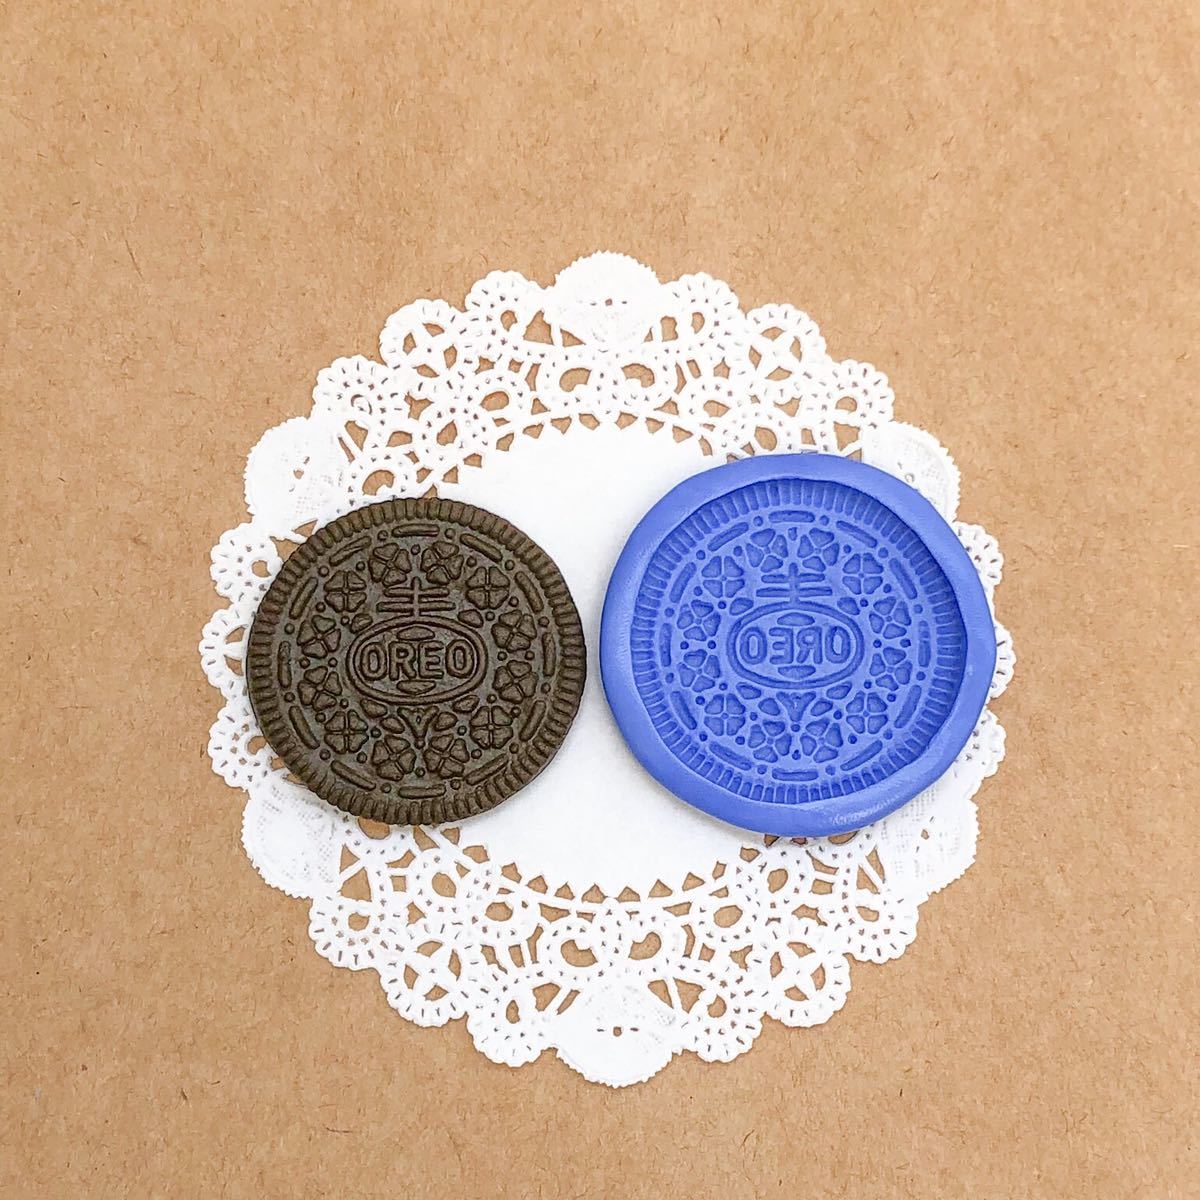 304 オレオ風クッキー型 デコ パーツ 樹脂粘土 チョコクッキー ブルーミックス ビスケット シリコン モールド ハンドメイド ミニチュア_画像1